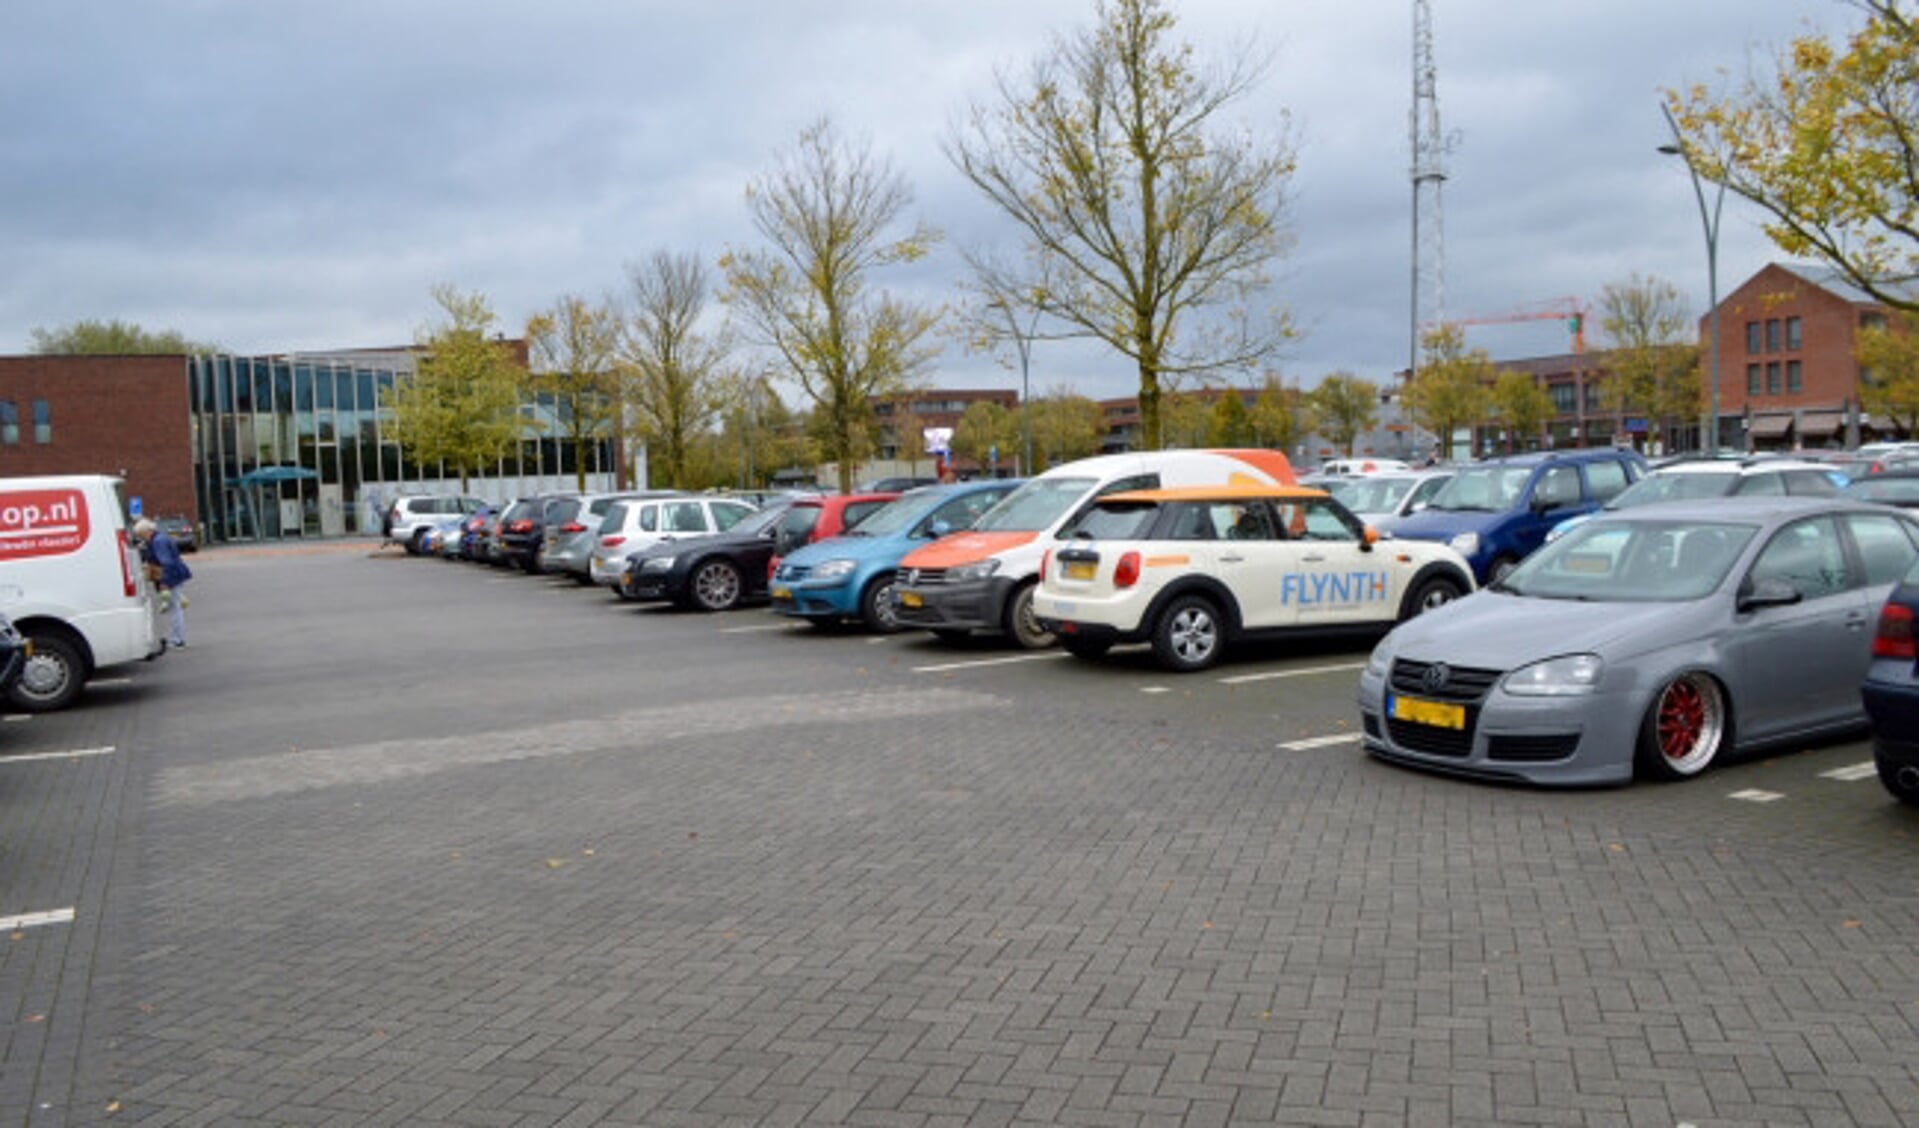  Parkeerplaats bij winkelcentrum Suydersee.